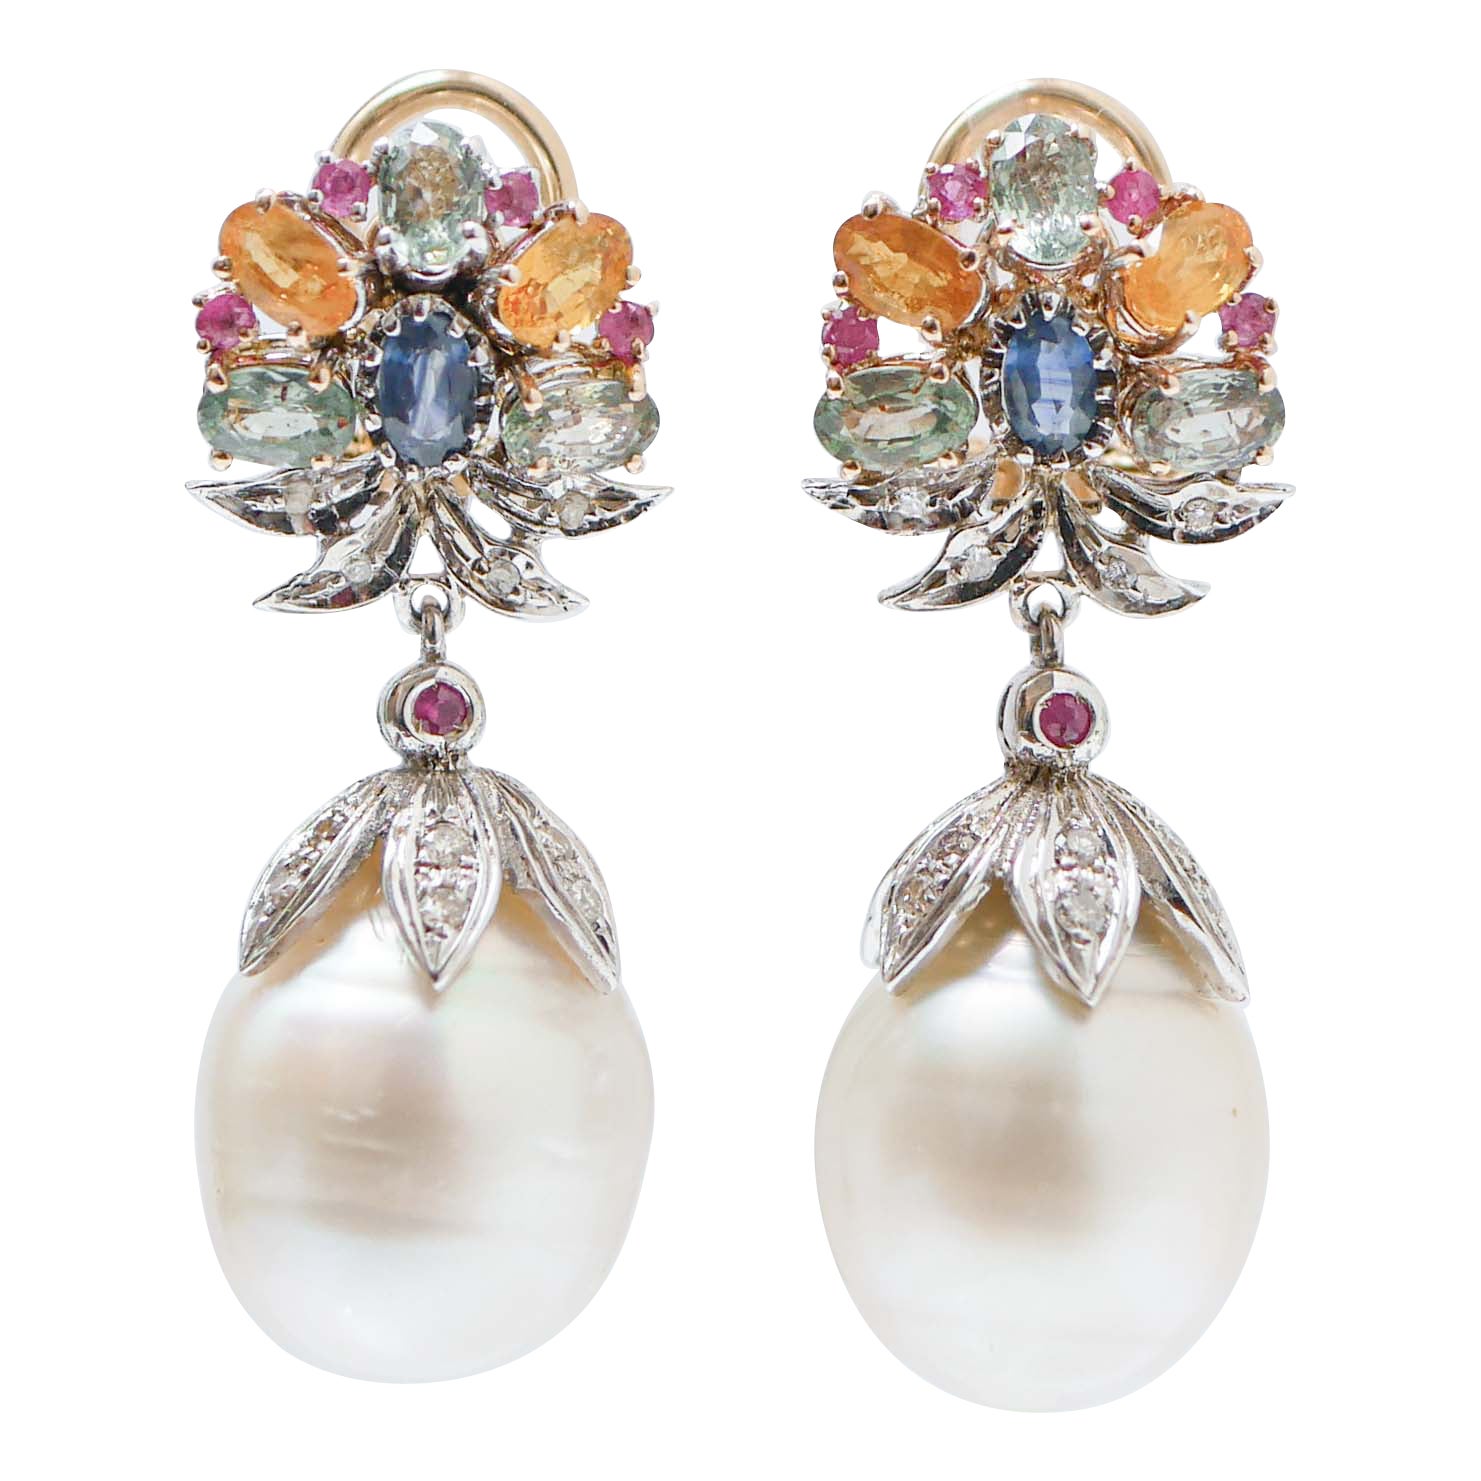 Mehrfarbiger Ohrring aus 14 Karat Roségold mit Saphiren, Rubinen, Diamanten, Perlen und Perlen